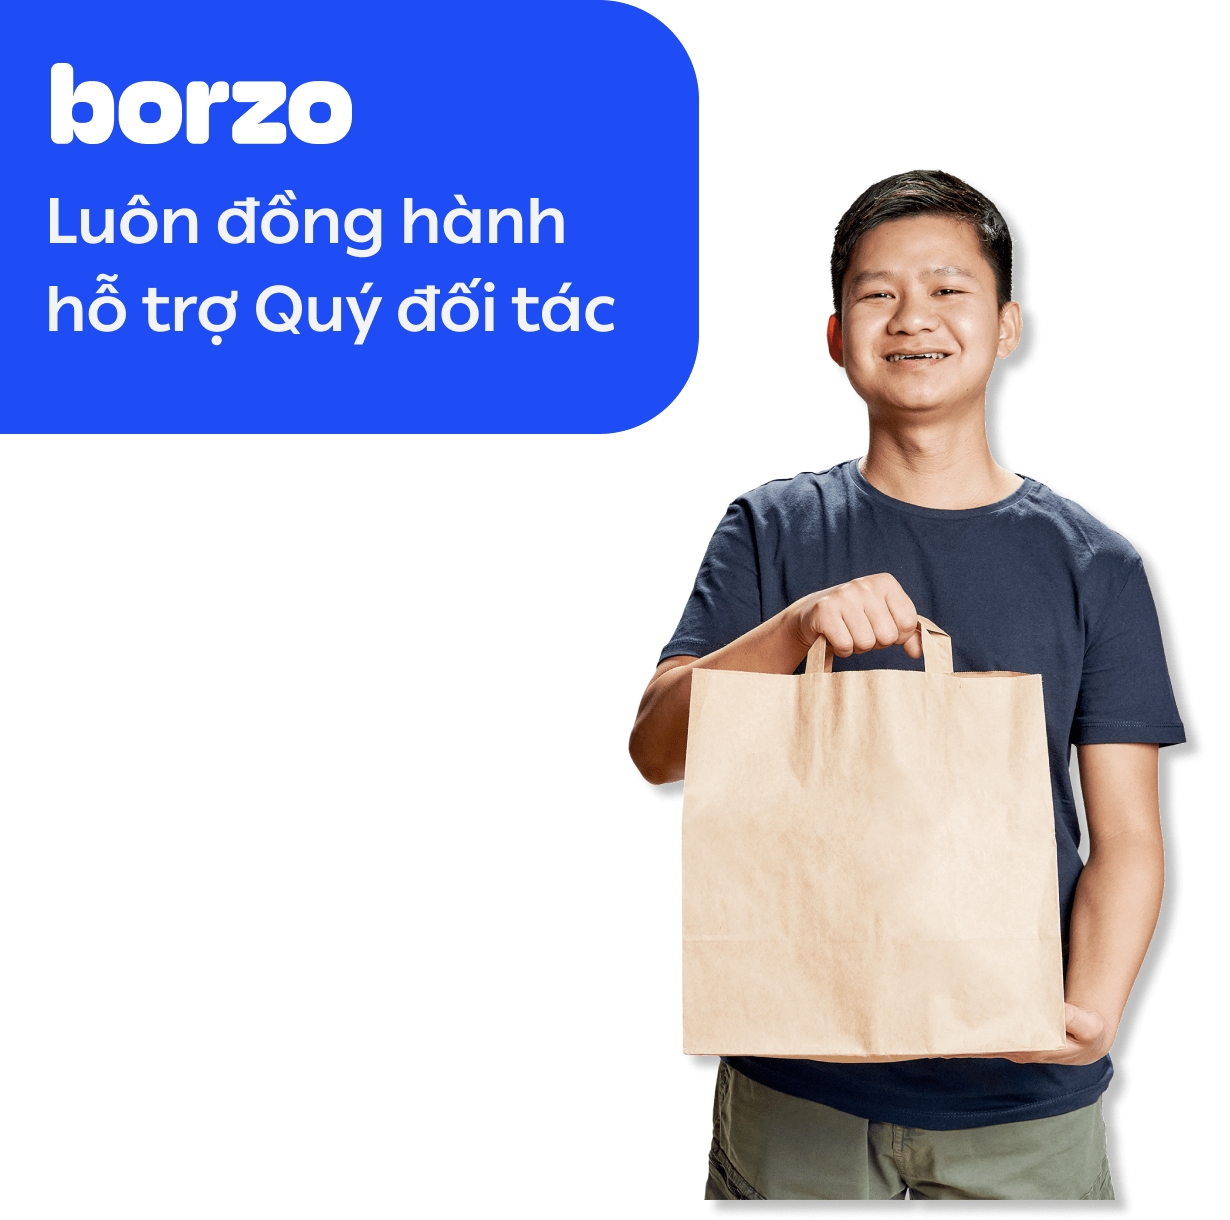 Borzo vẫn liên tục cập nhật và đẩy nhanh quá trình xử lý hồ sơ cho quý đối tác.